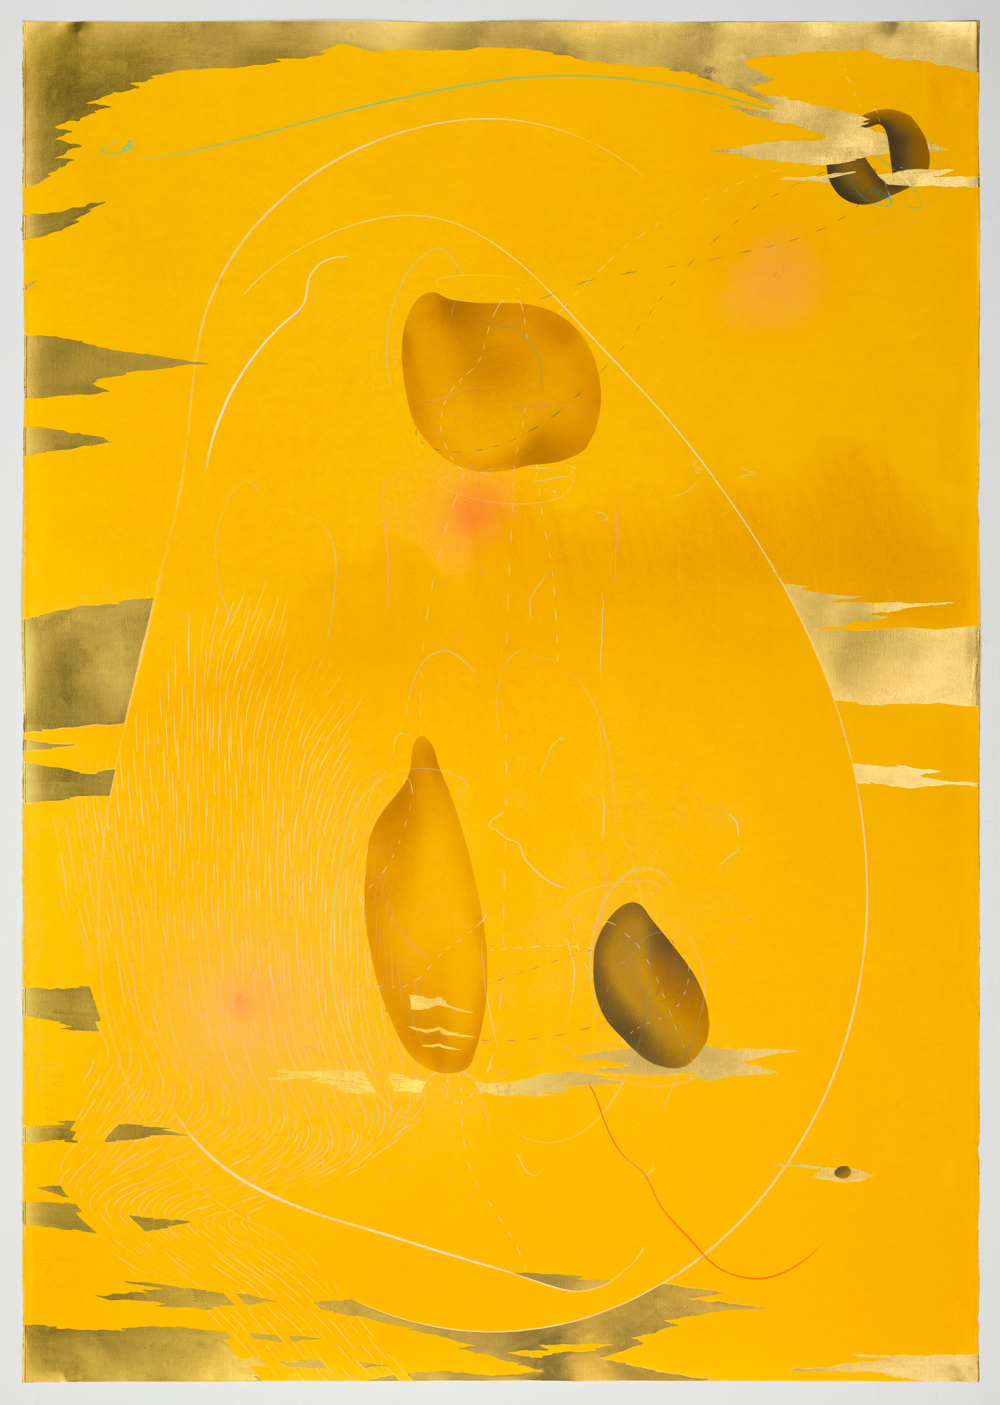 WV 2018-172 Immersive Integral Radiance Triptychon III Jorinde Voigt Berlin 2018 199 x 140 cm Tusche, flüssige Wasserfarbe, Blattgold, Pastell, Ölkreide, Graphit auf Papier Unikat Signiert